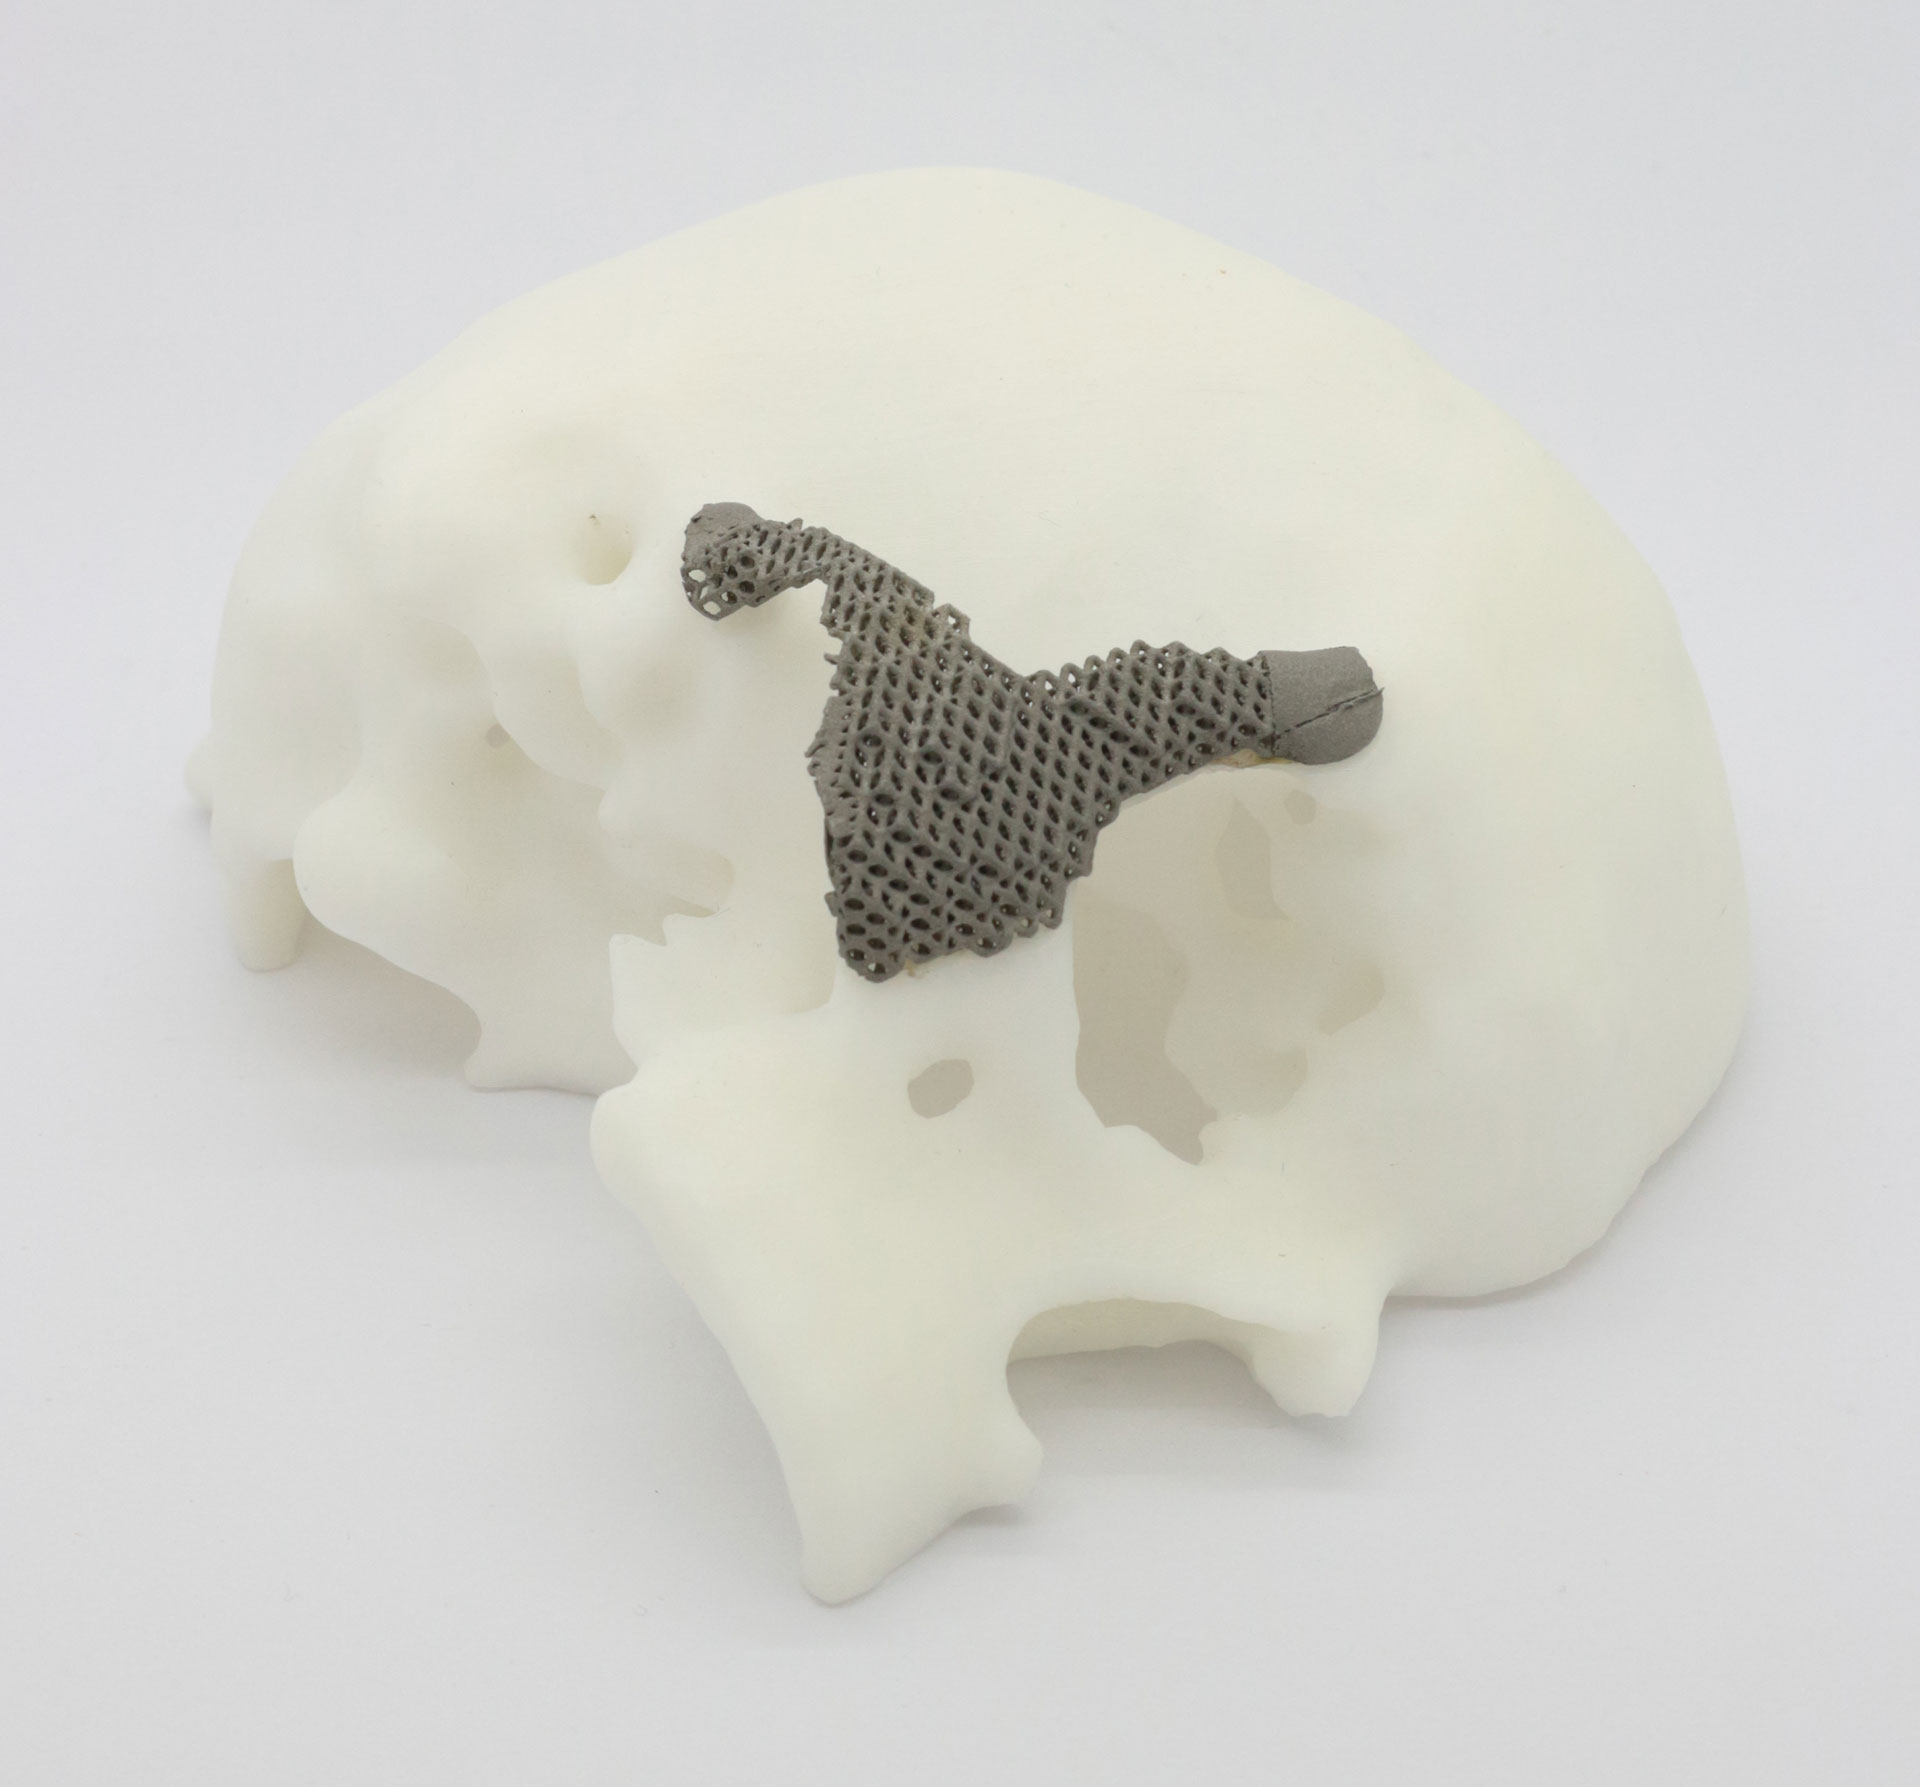 Modell des menschlichen Schädels mit additiv gefertigtem Implantat des Joch- und Teil des Schläfenbeins